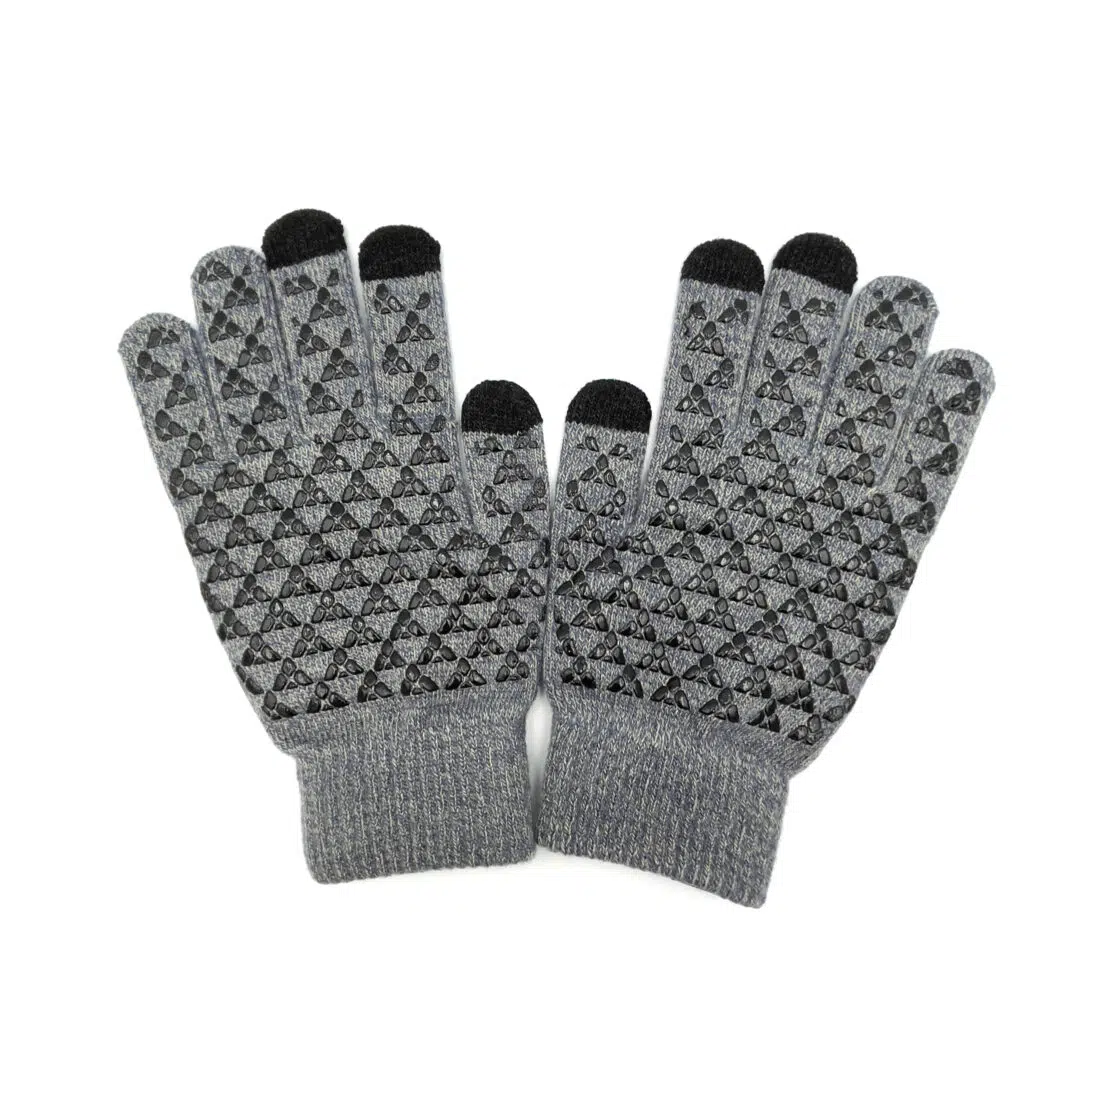 Pg gloves